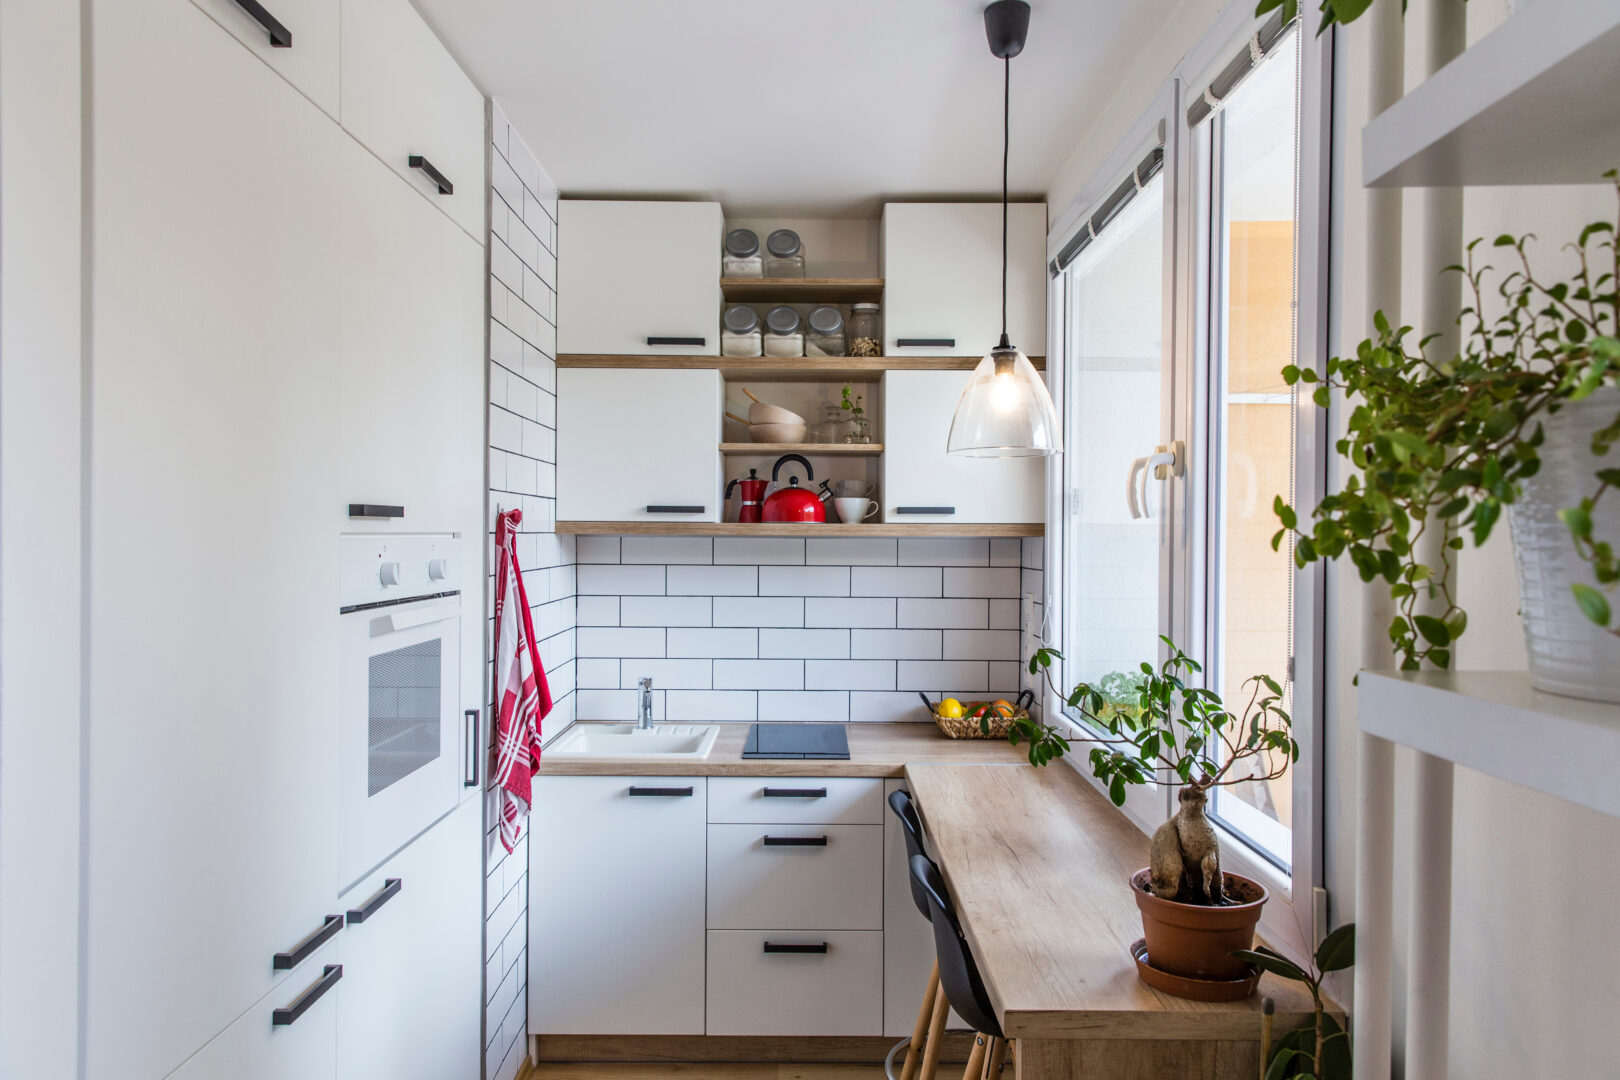 Prateleira industrial, cozinha apartamento pequeno. #apartamentopequeno # cozinha #apdirecional 